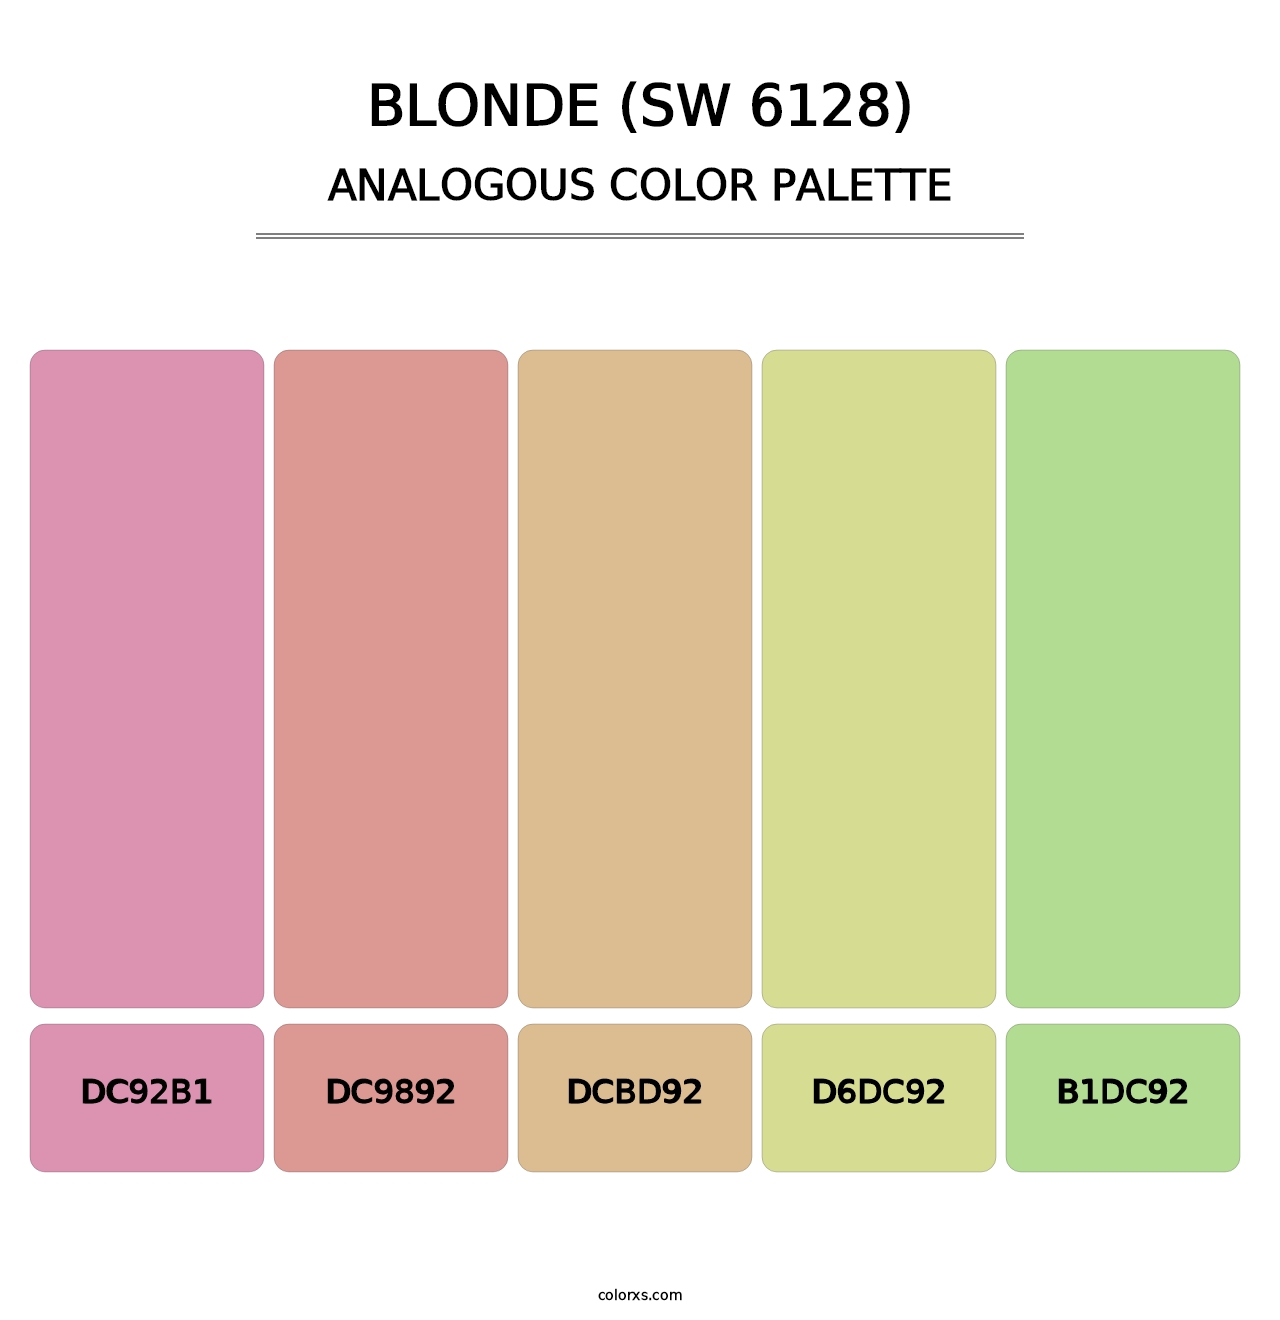 Blonde (SW 6128) - Analogous Color Palette